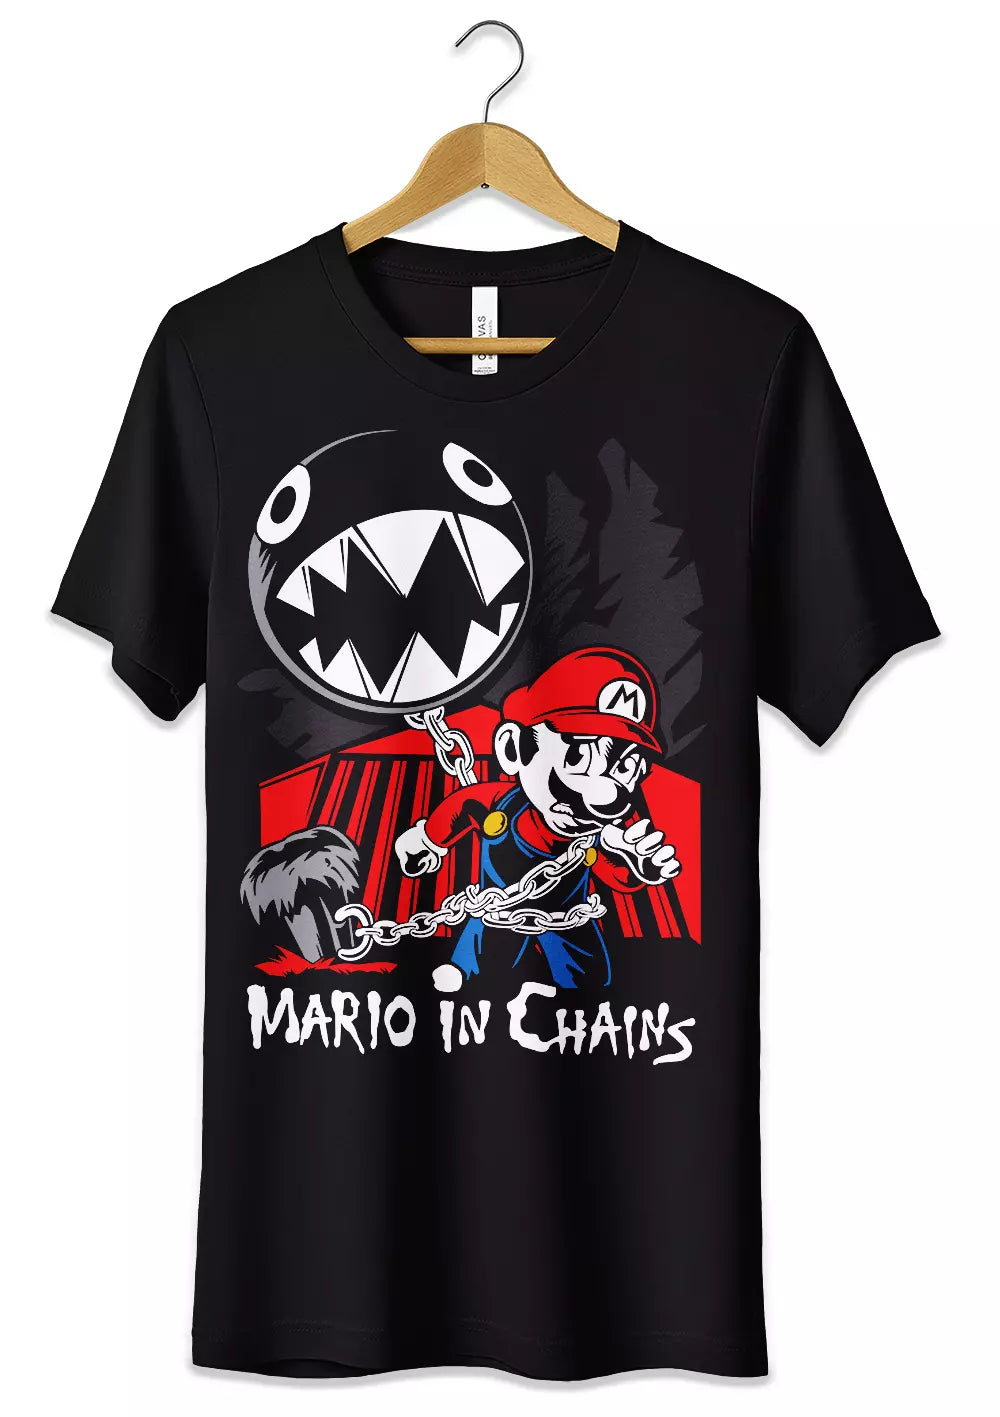 T-Shirt Maglietta Videogames Super Mario in Catene, CmrDesignStore, T-Shirt, t-shirt-maglietta-videogames-super-mario-in-catene, CmrDesignStore